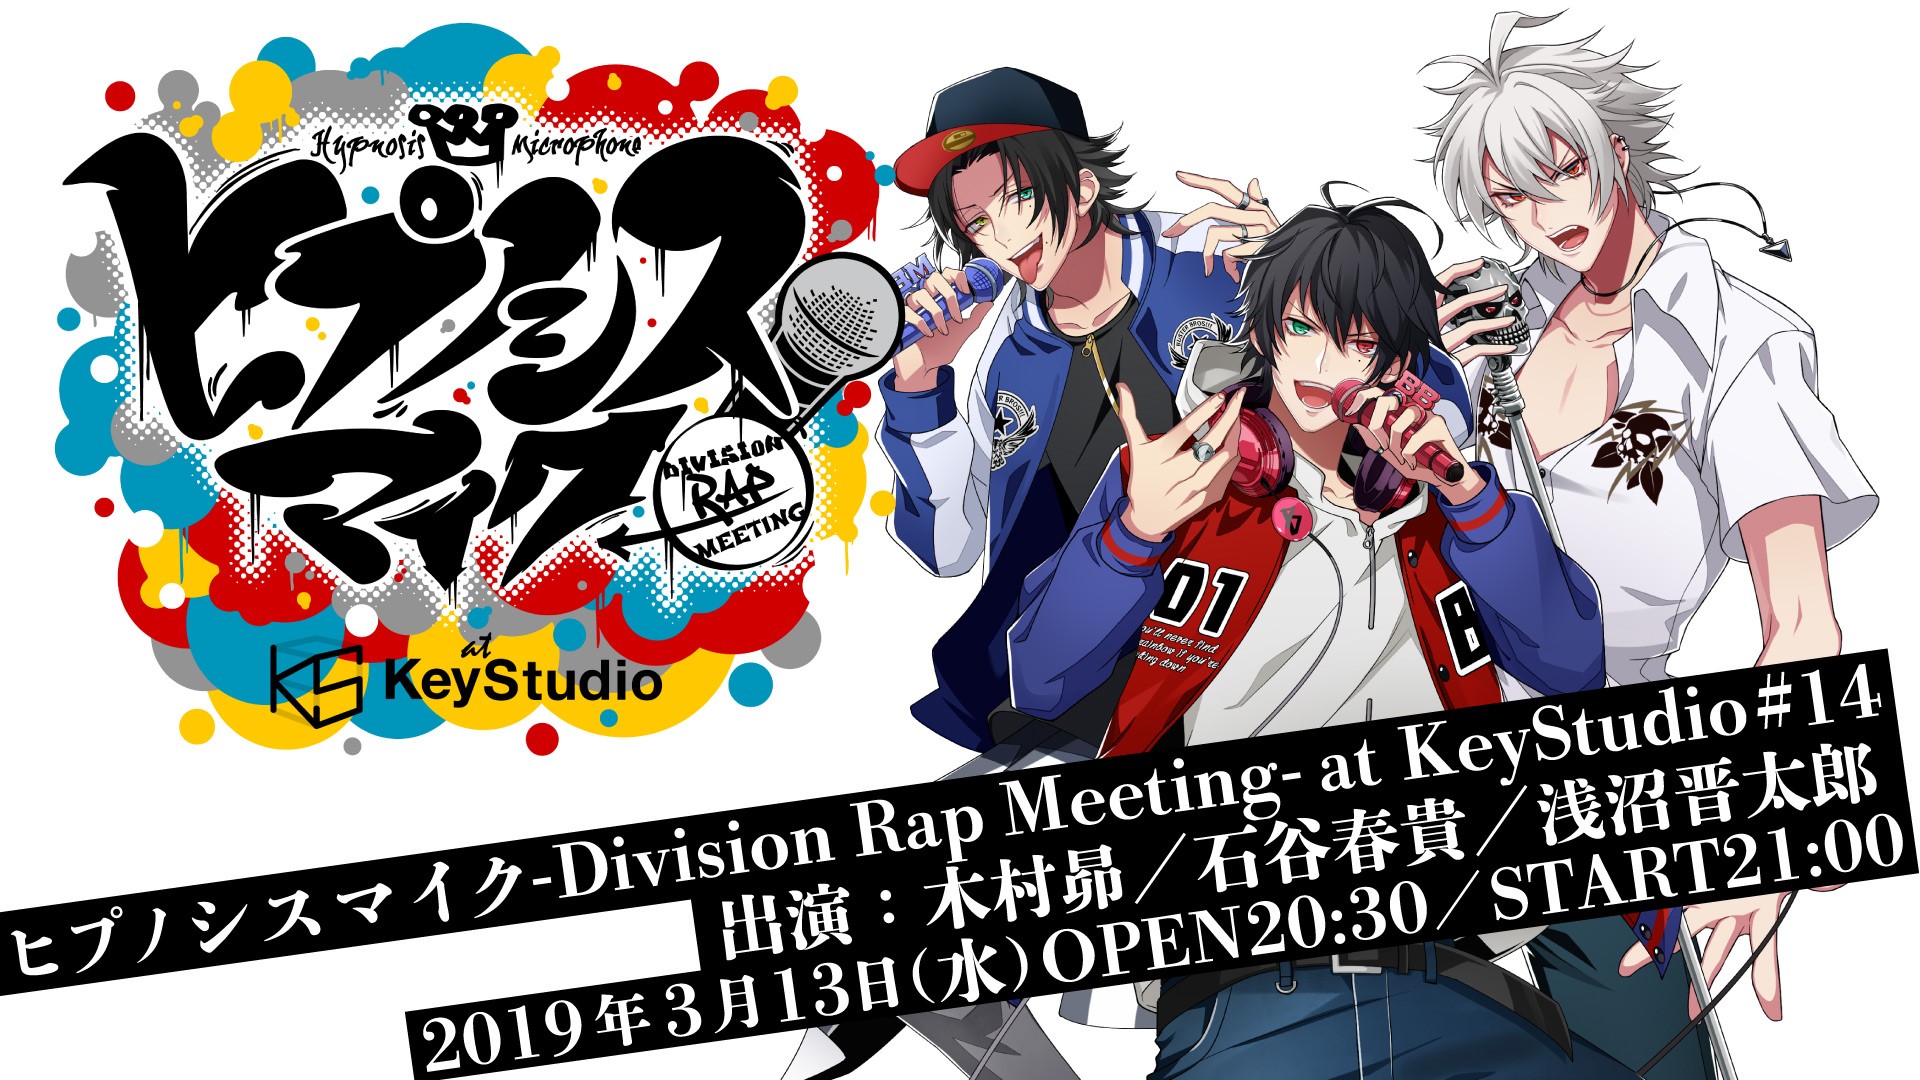 ヒプノシスマイク -Division Rap Meeting- at KeyStudio #14